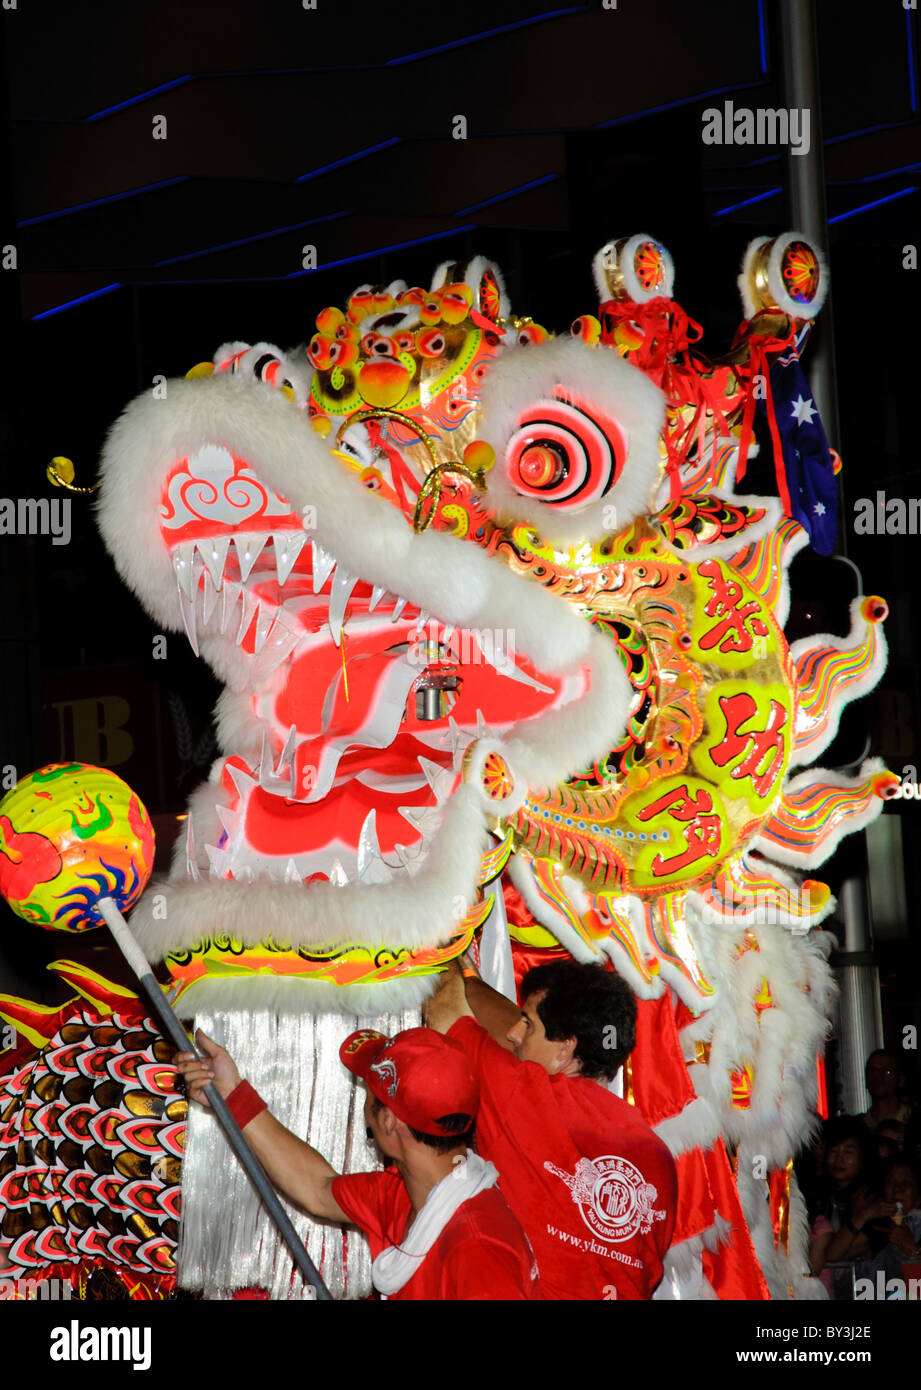 Un grande dragon prende parte al nuovo anno cinese twilight parade di Sydney, Australia; dragon dance; dragone cinese costume; multi-festival culturale Foto Stock